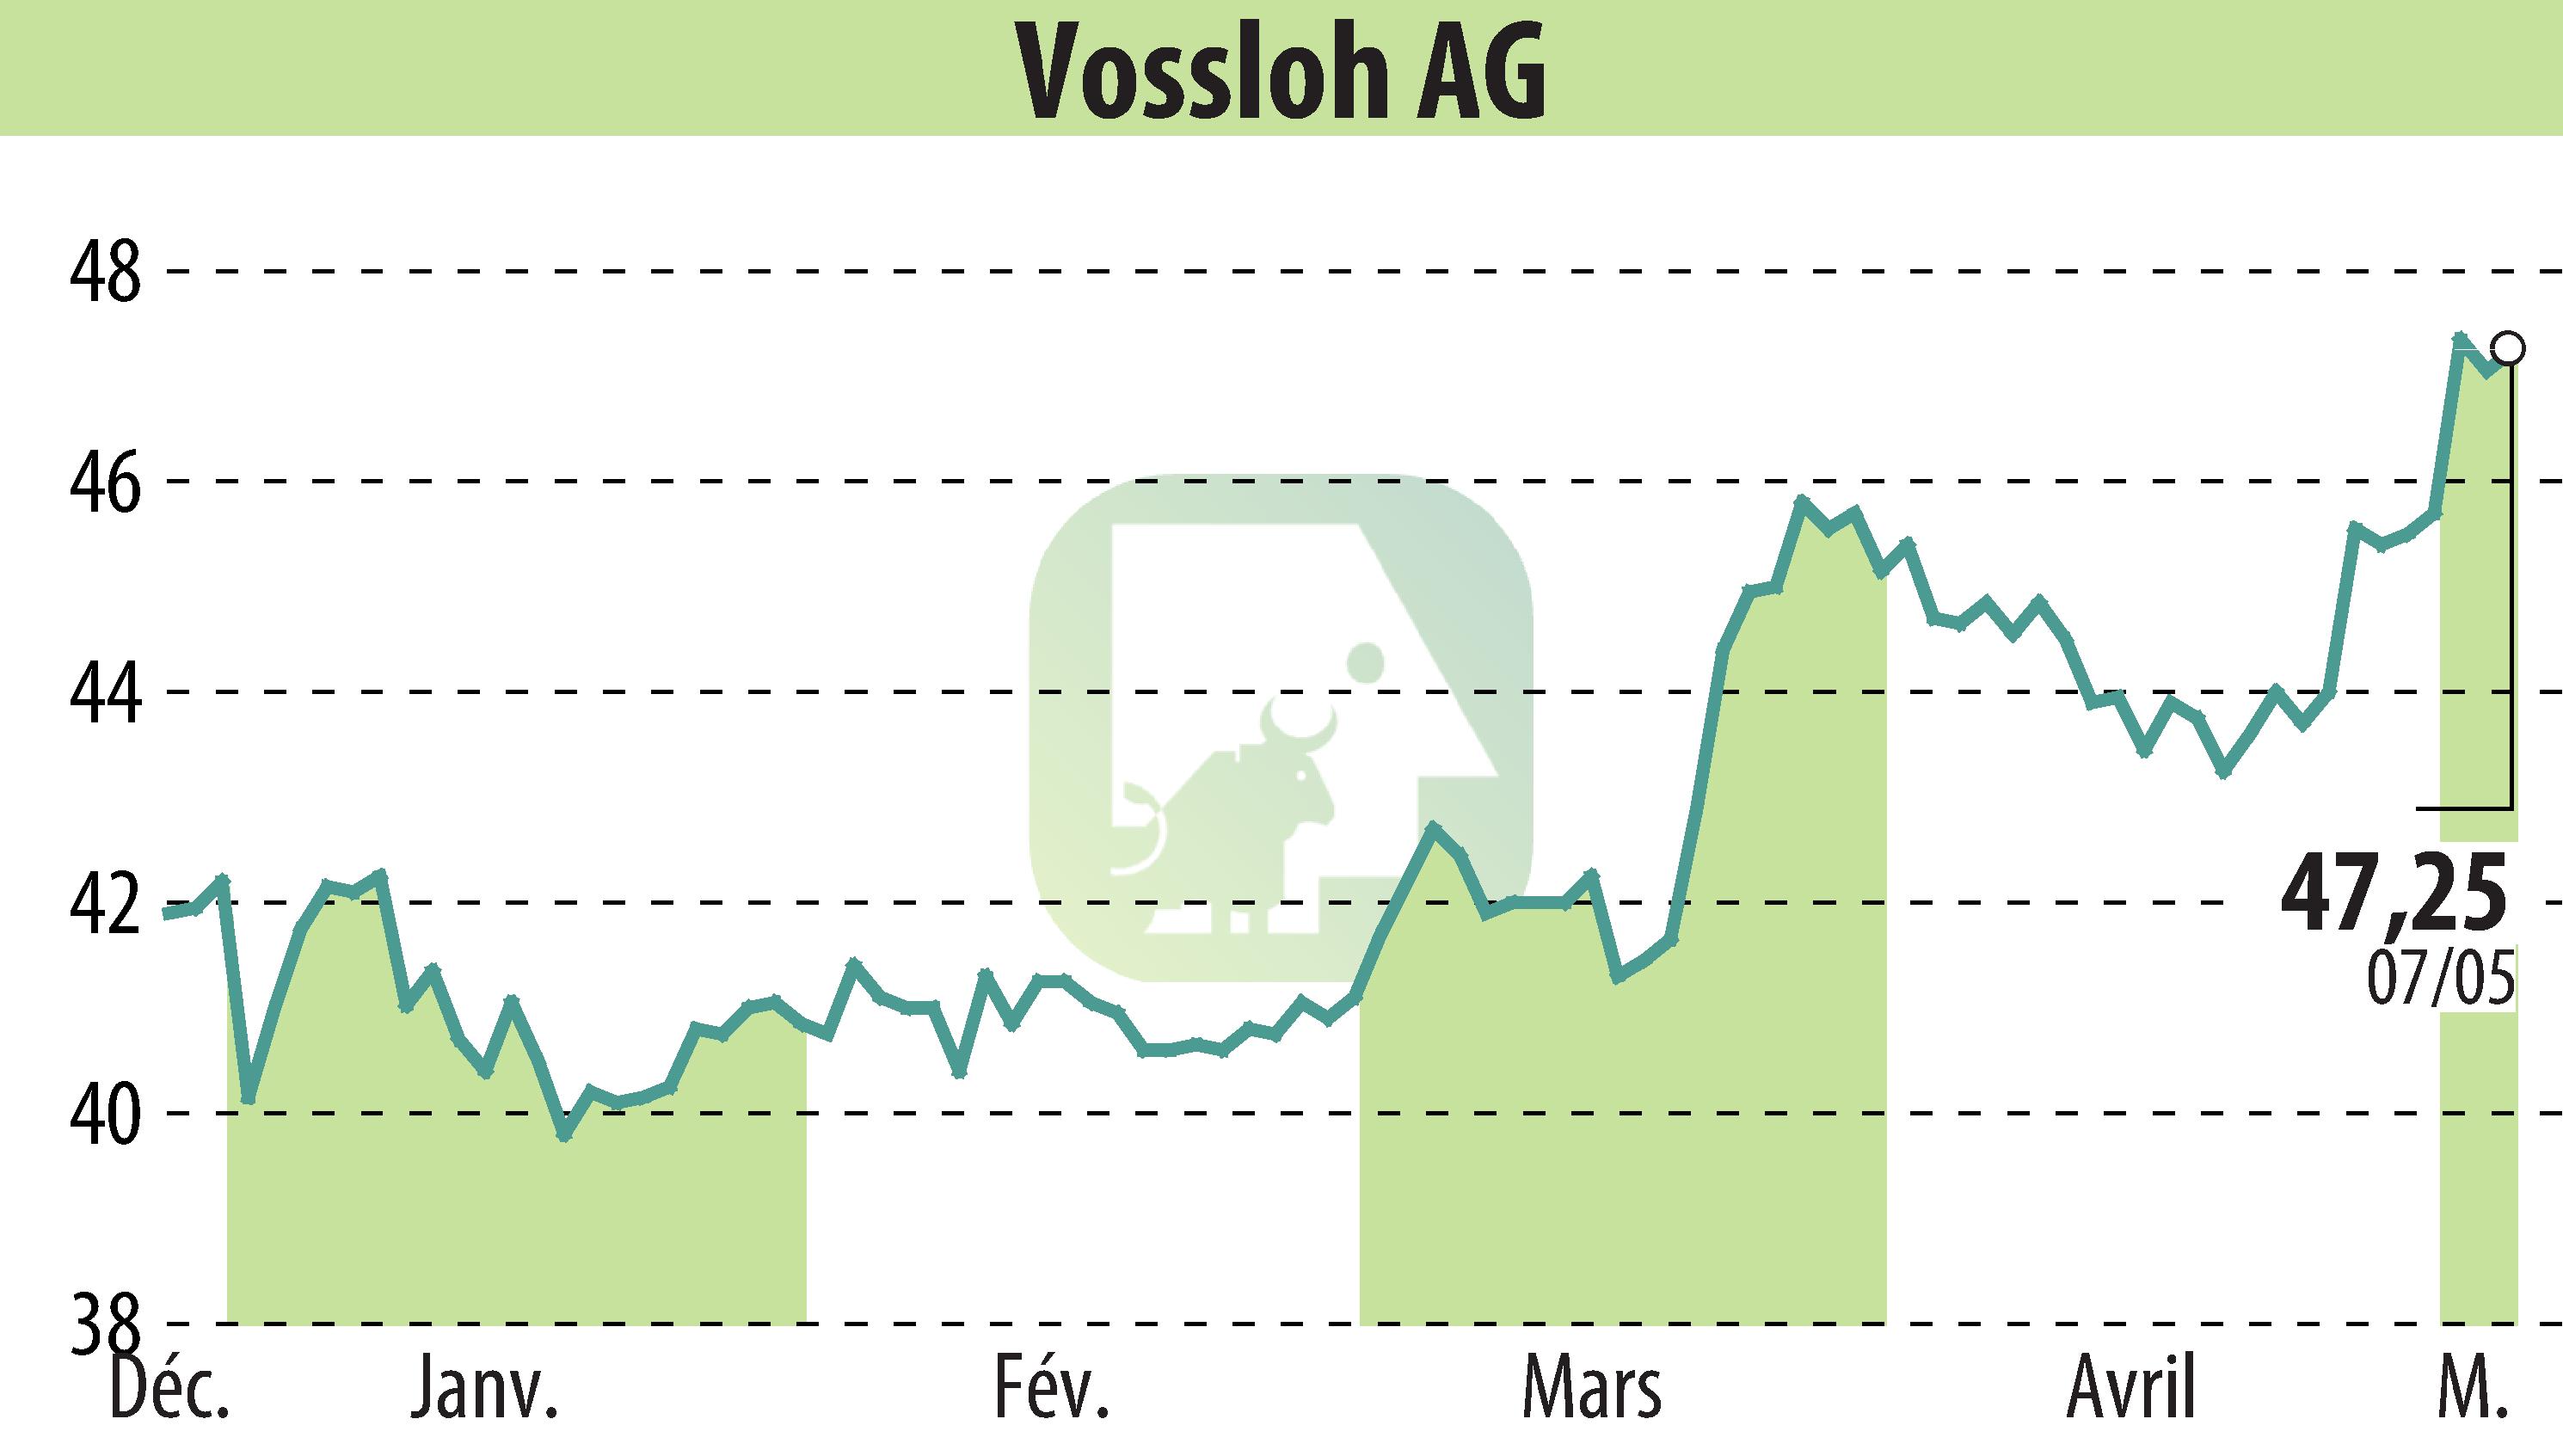 Graphique de l'évolution du cours de l'action Vossloh AG (EBR:VOS).